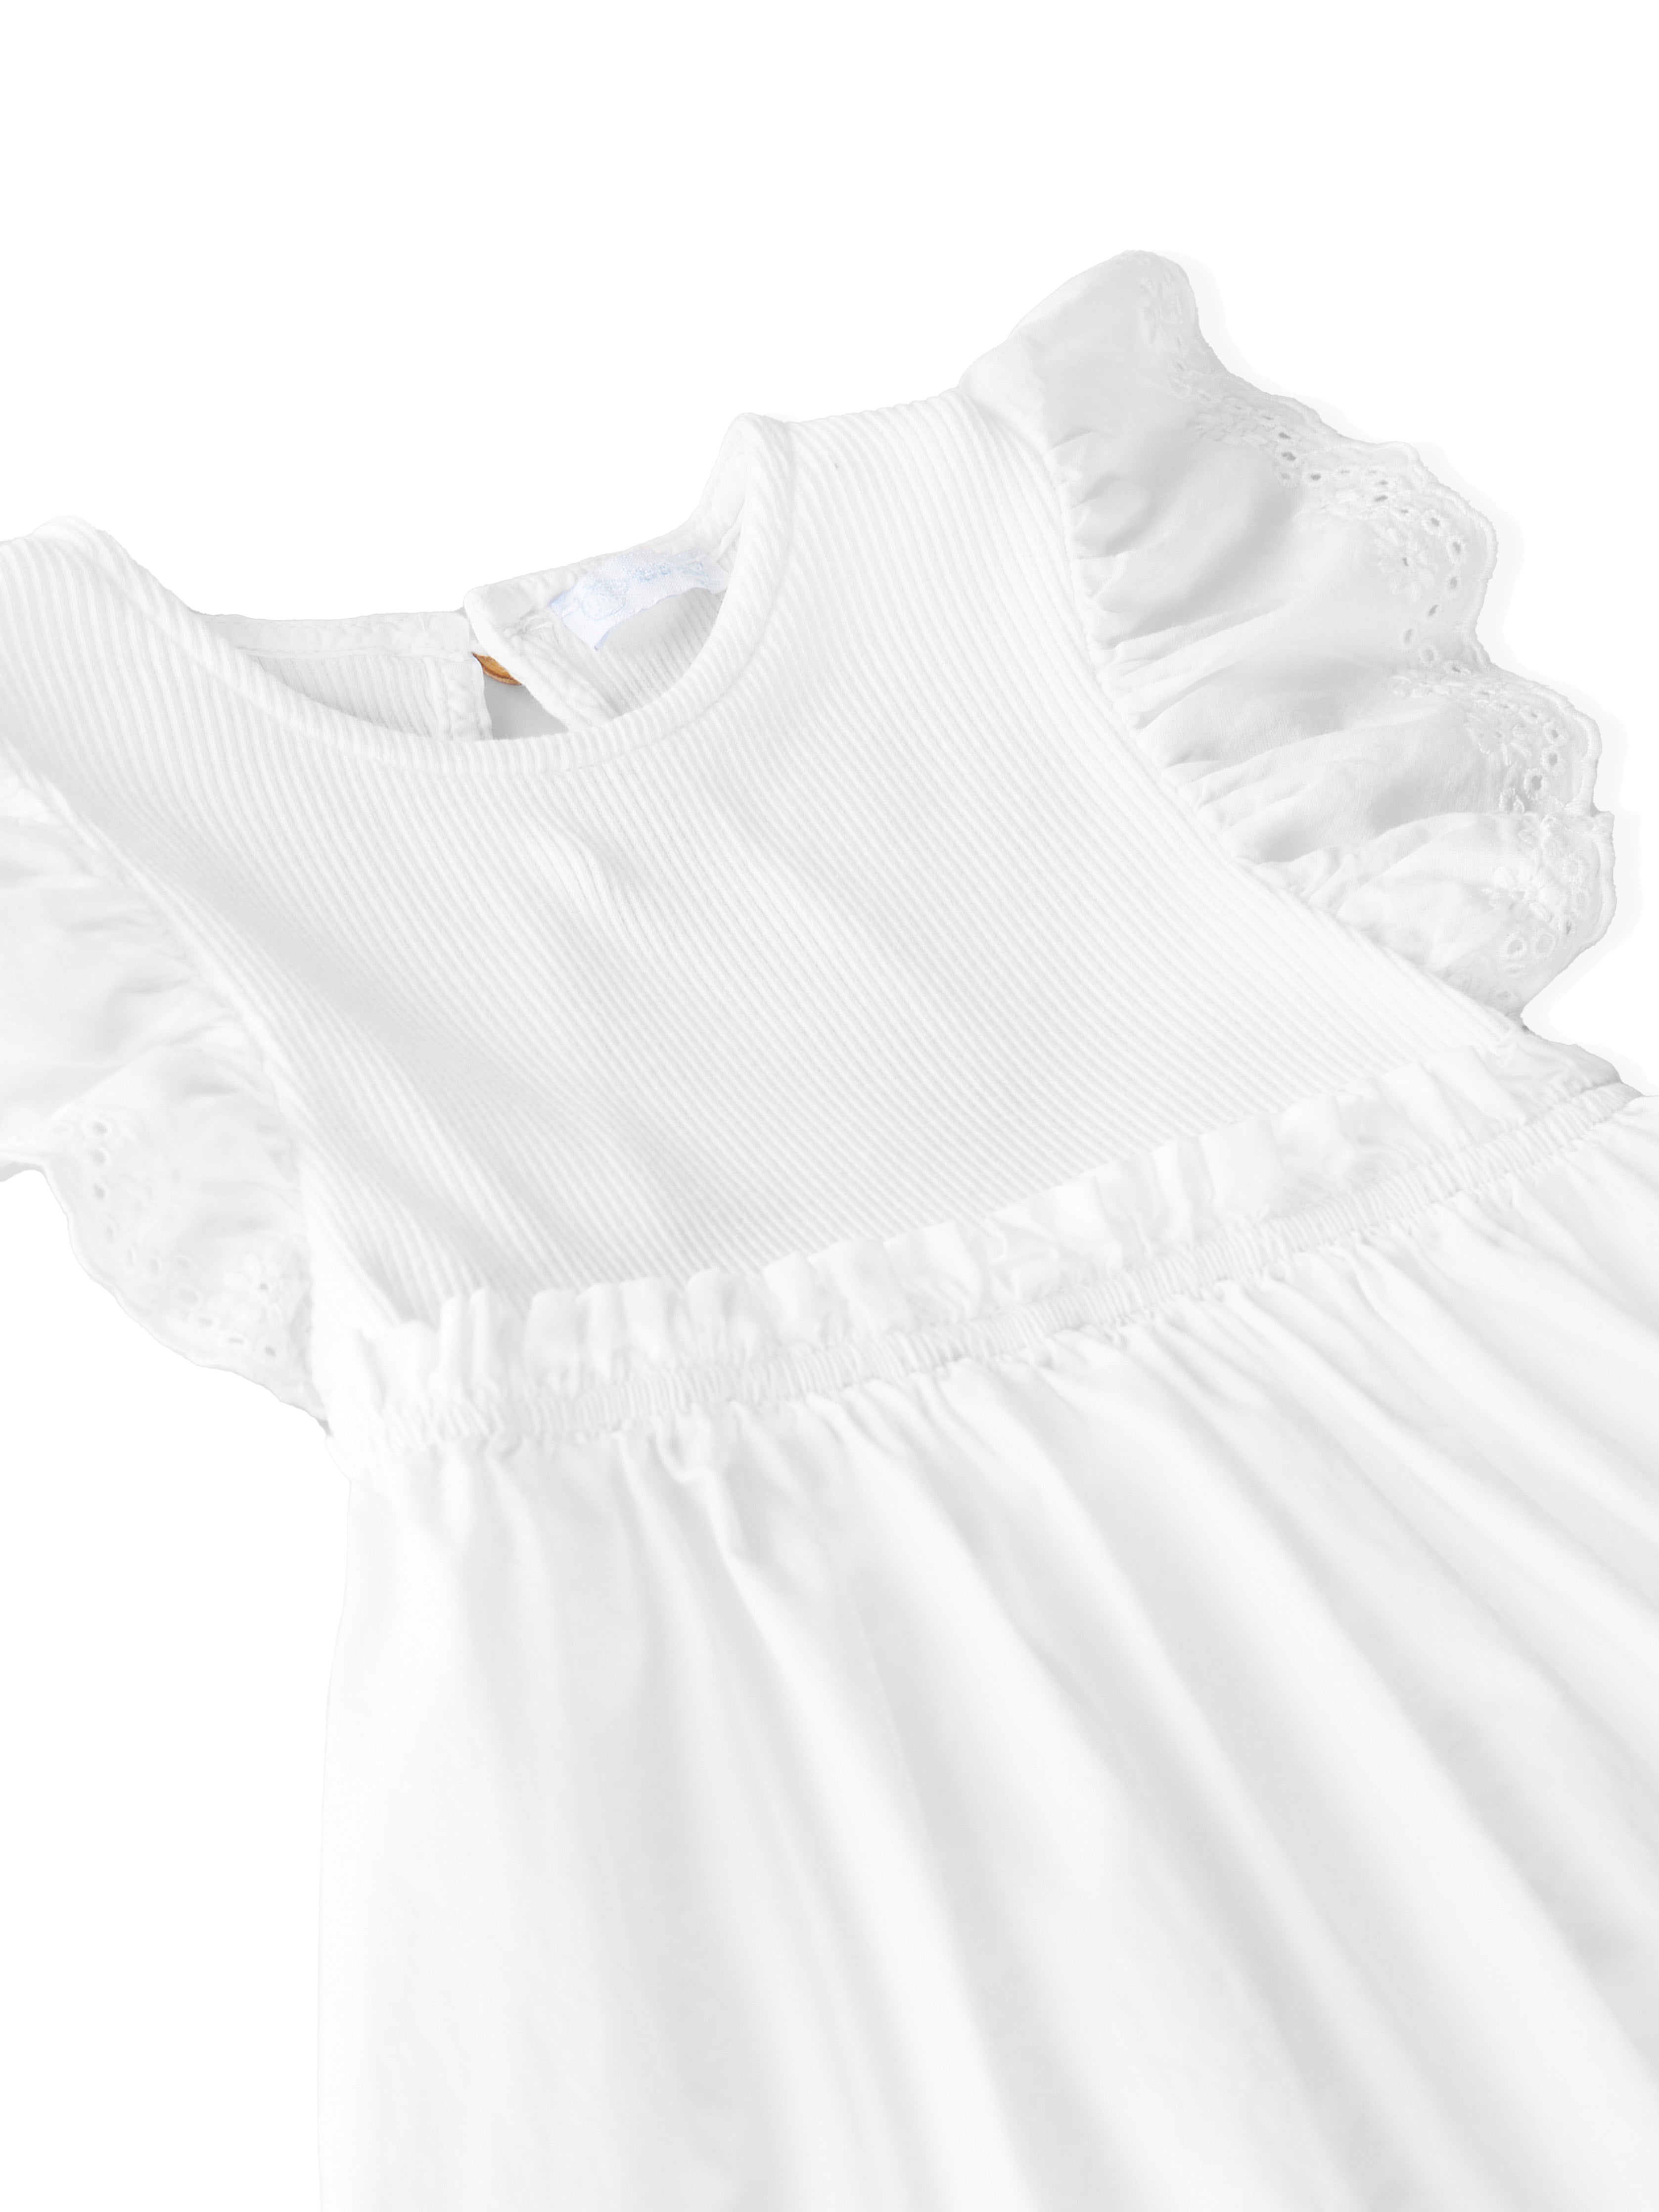 Laranjinha dress white with ruffle